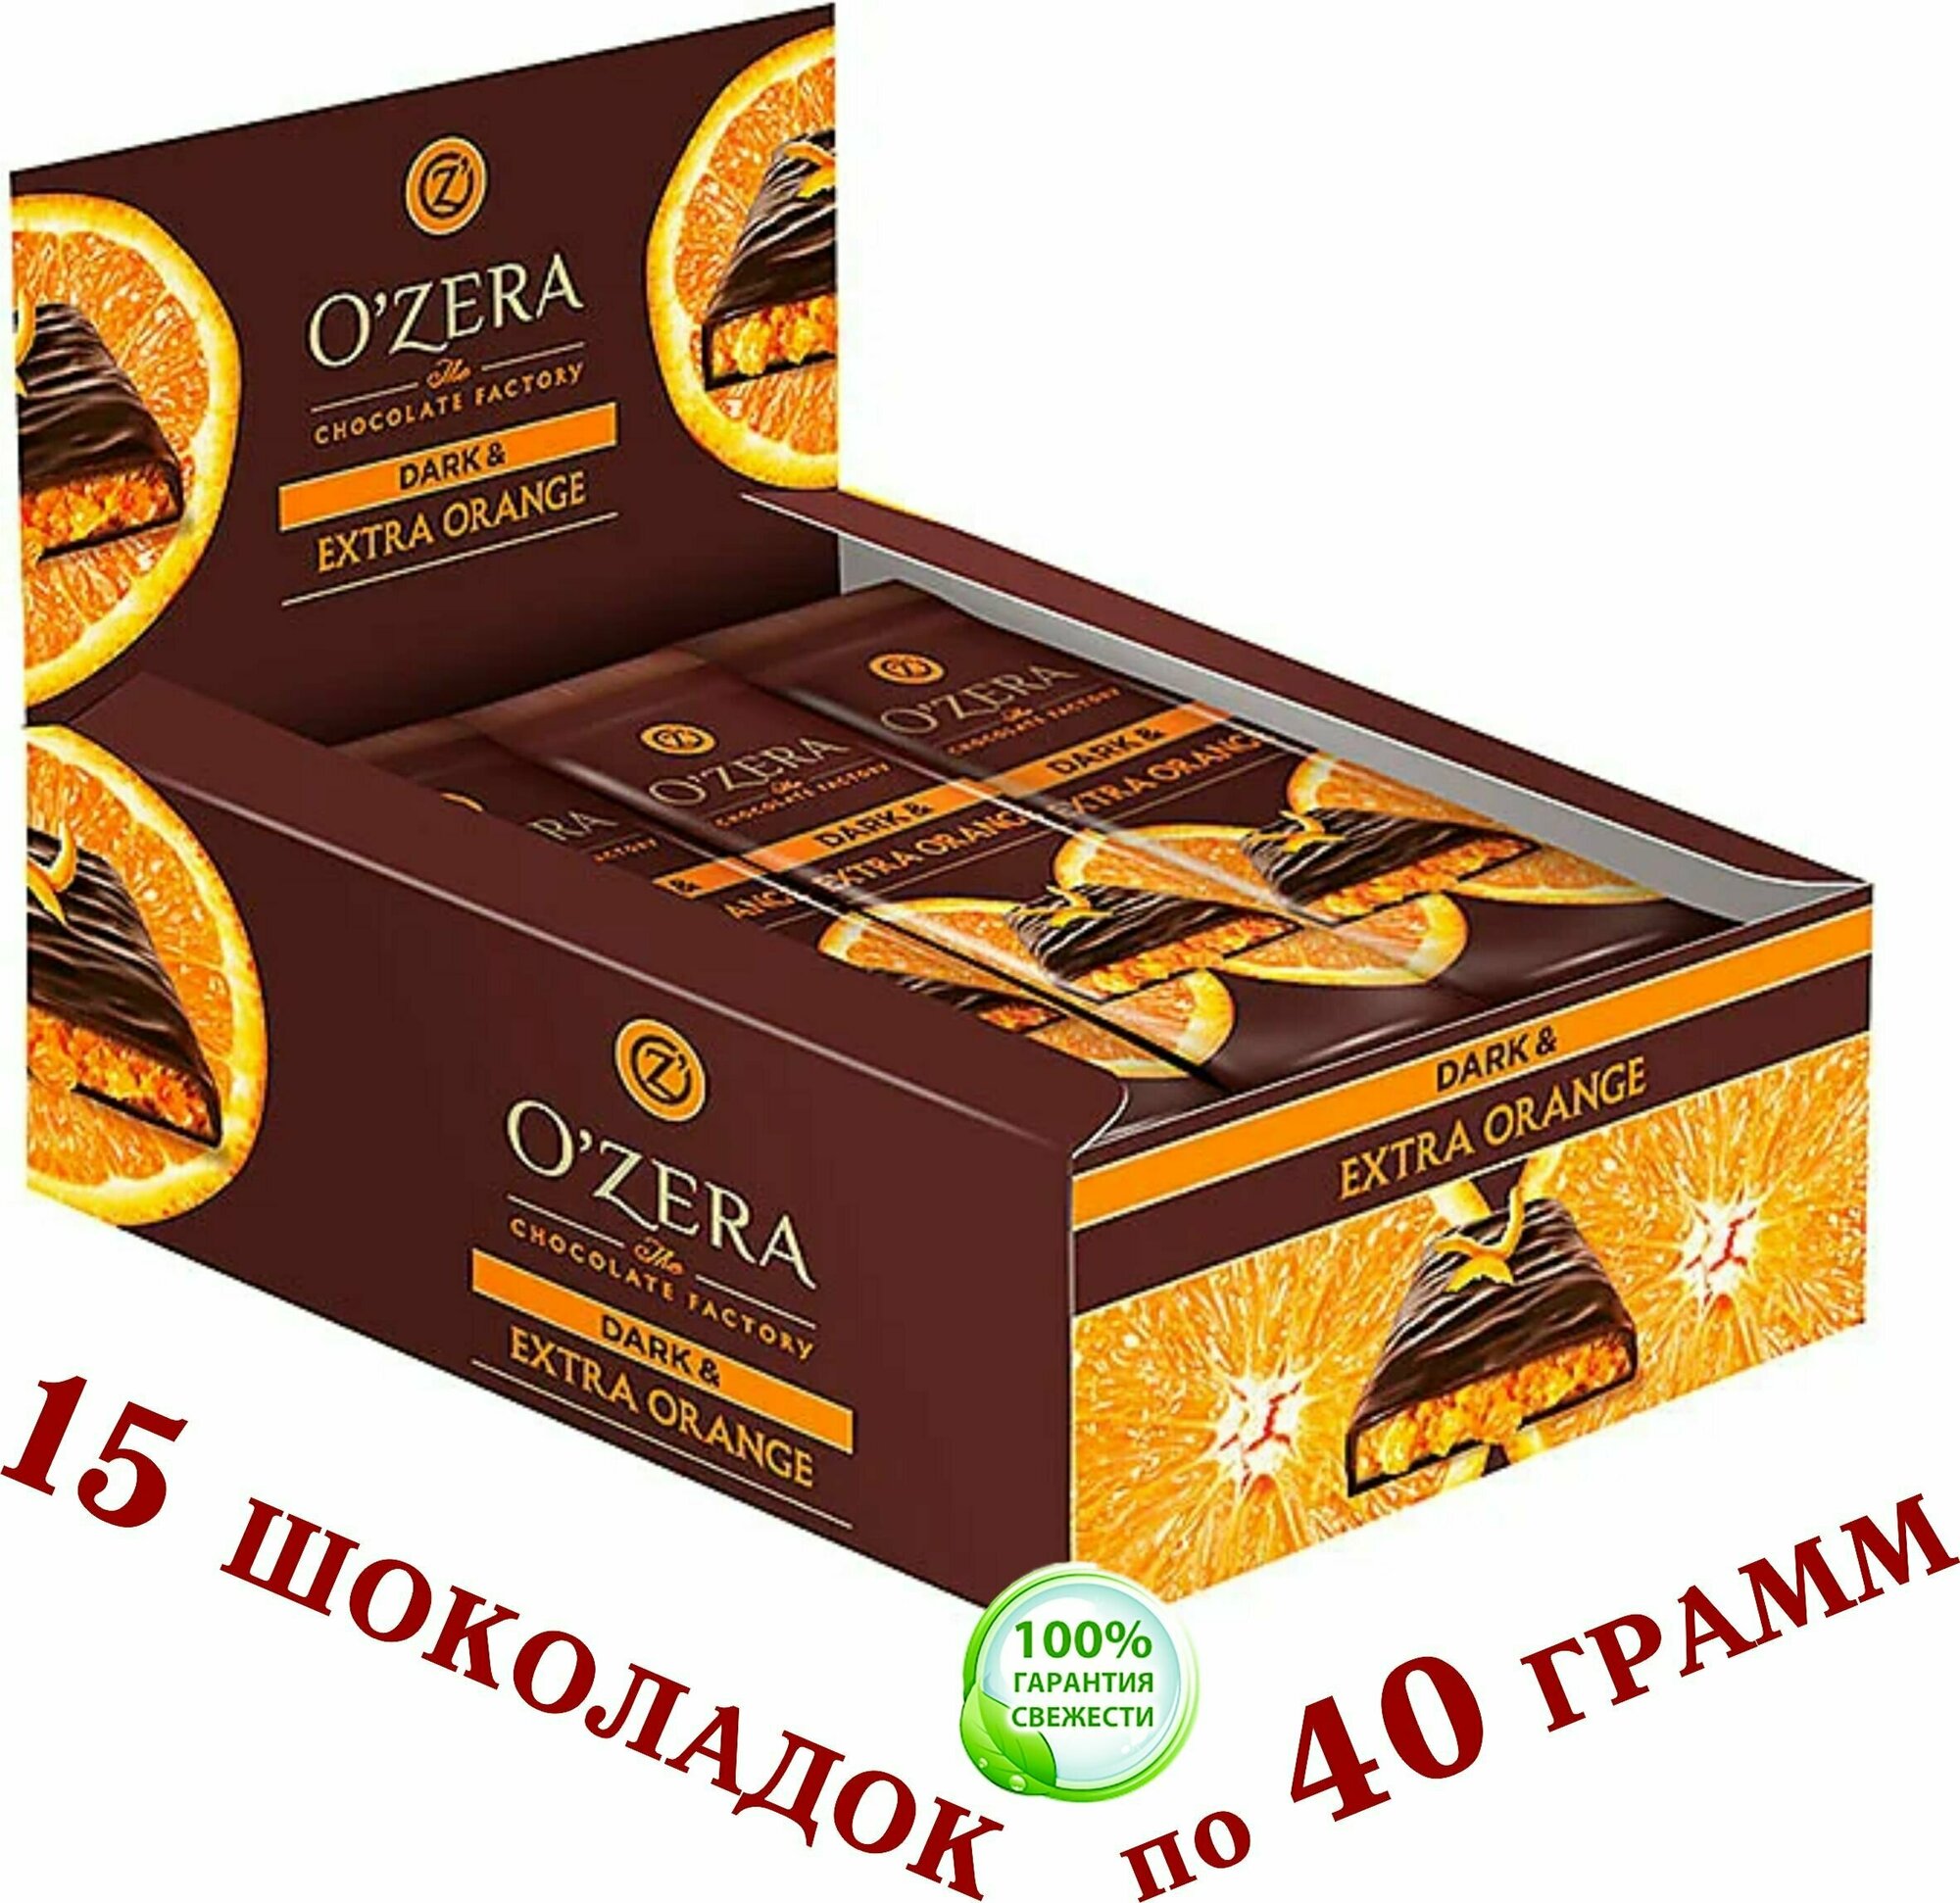 Шоколад горький С апельсиновой начинкой "озёрский" Dark & Red berries "OZera" 15 упаковок по 40 г .